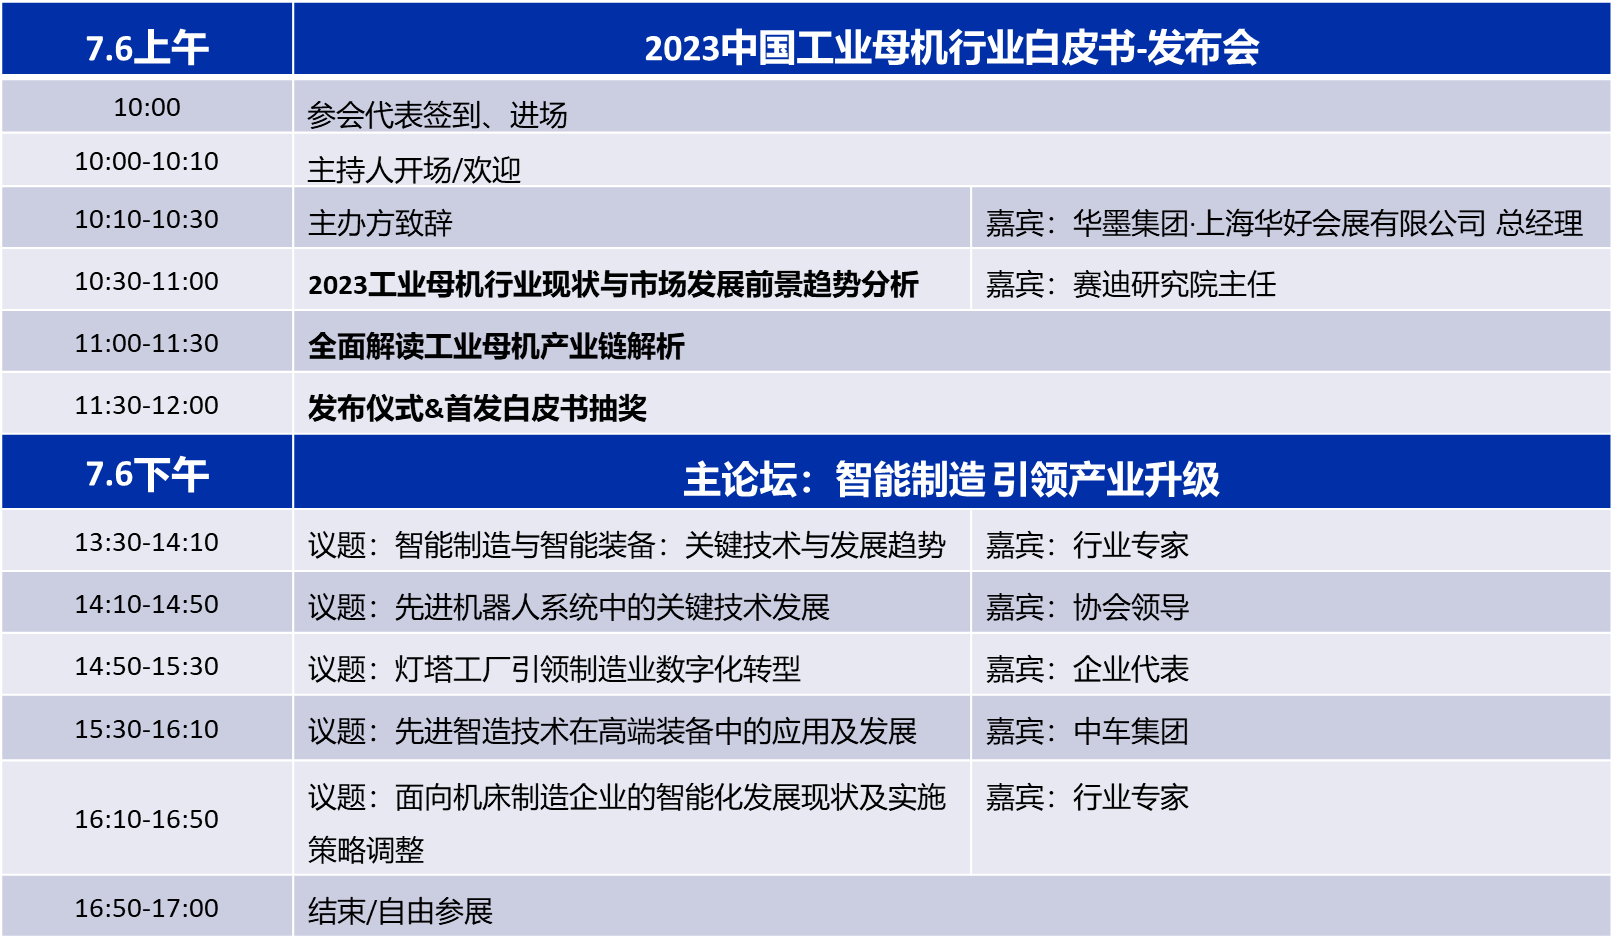 2023中国工业母机行业白皮书-发布会